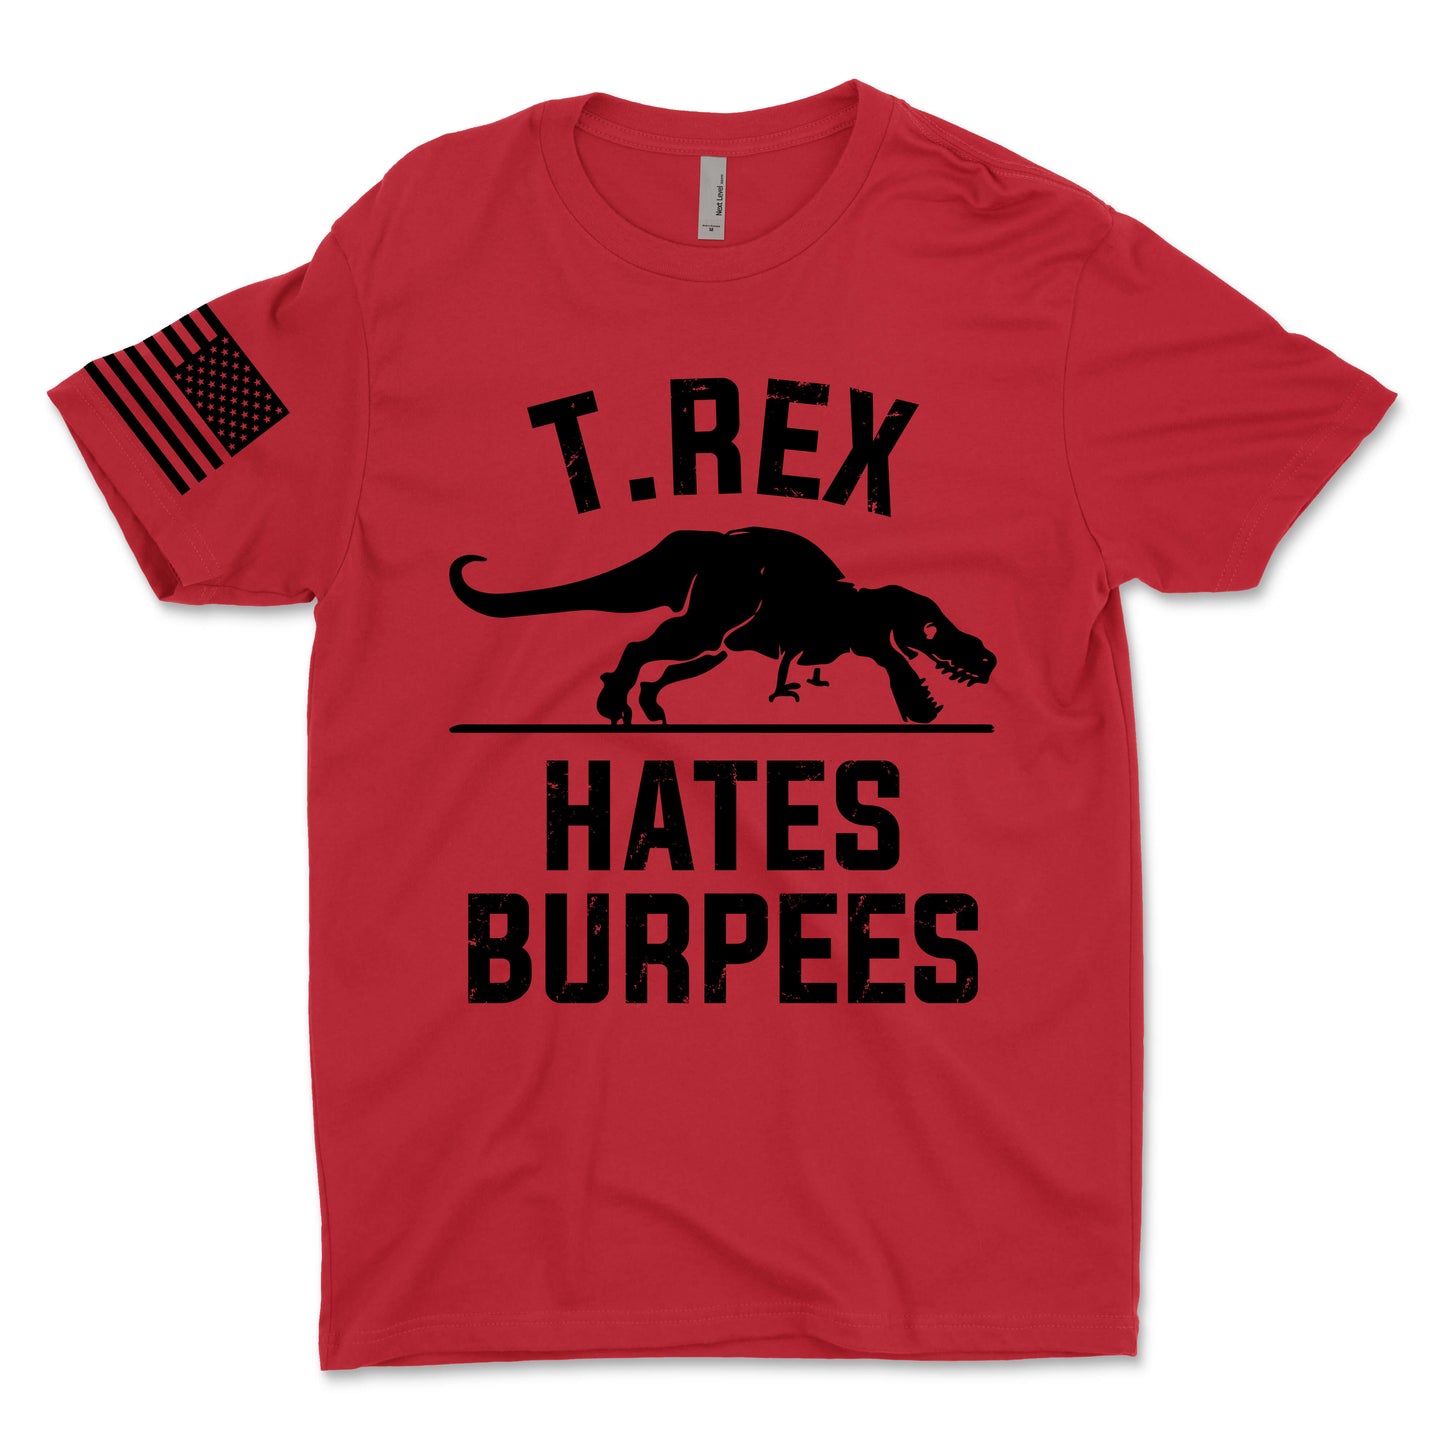 T.Rex Hates Burpees Men's T-Shirt